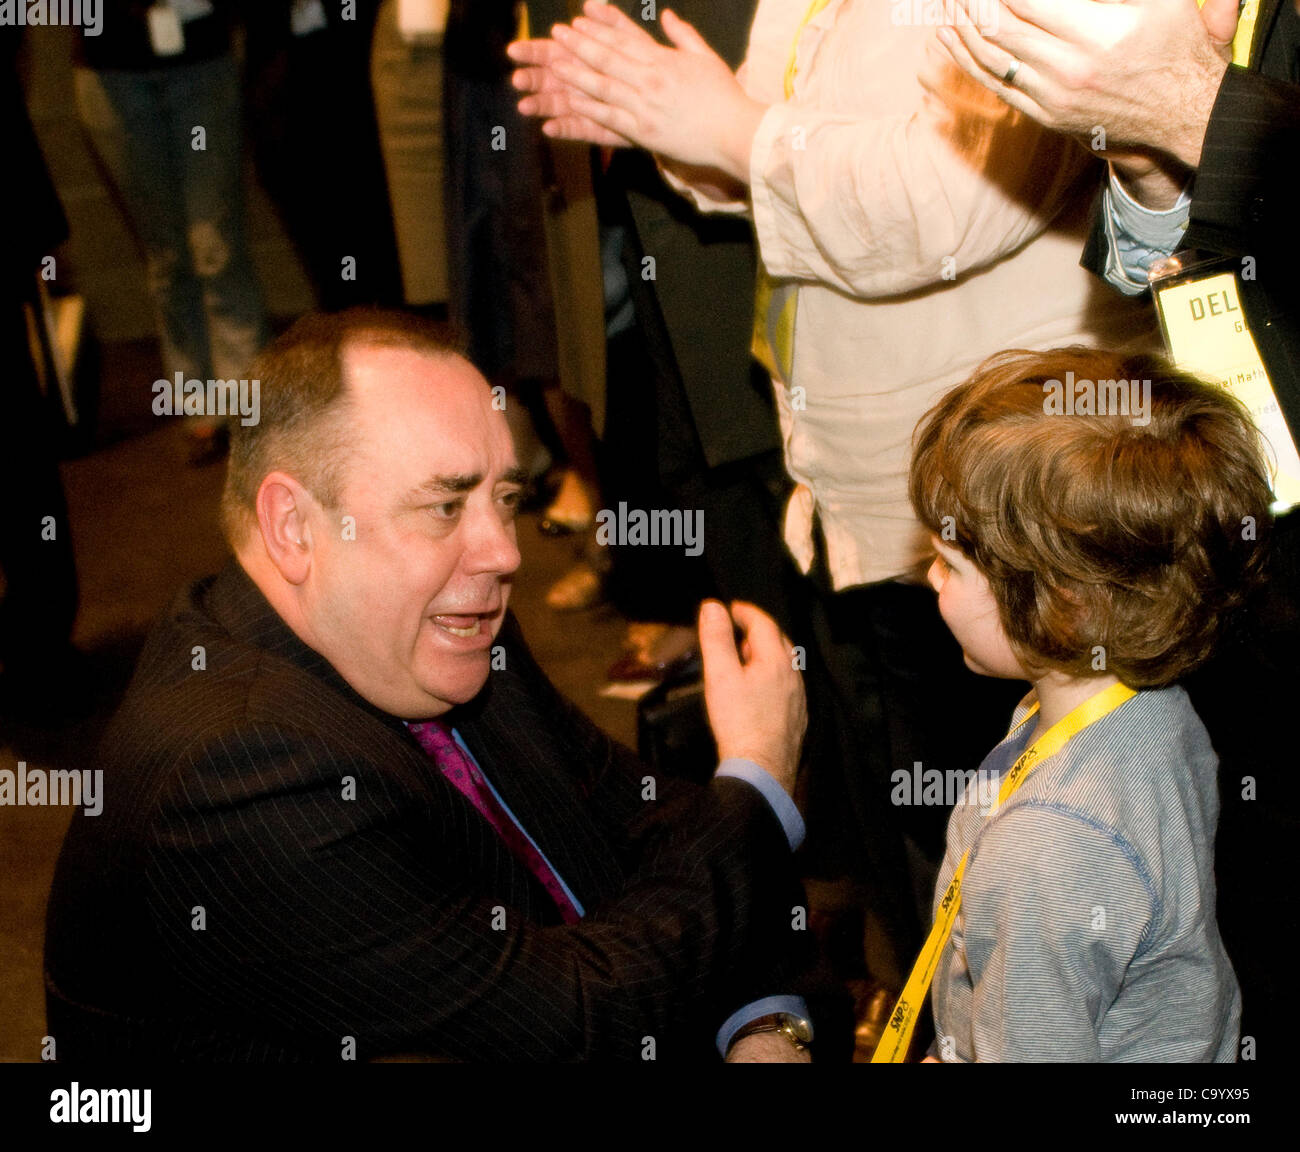 Glasgow, Regno Unito. 10 mar 2012. Alex Salmond, Scottish Primo Ministro, incontra un giovane delegato, dopo aver affrontato i SNP conferenza di primavera, che ha avuto luogo a Glasgow il SECC. Immagine: Wullie Marr/ Alamy Foto Stock